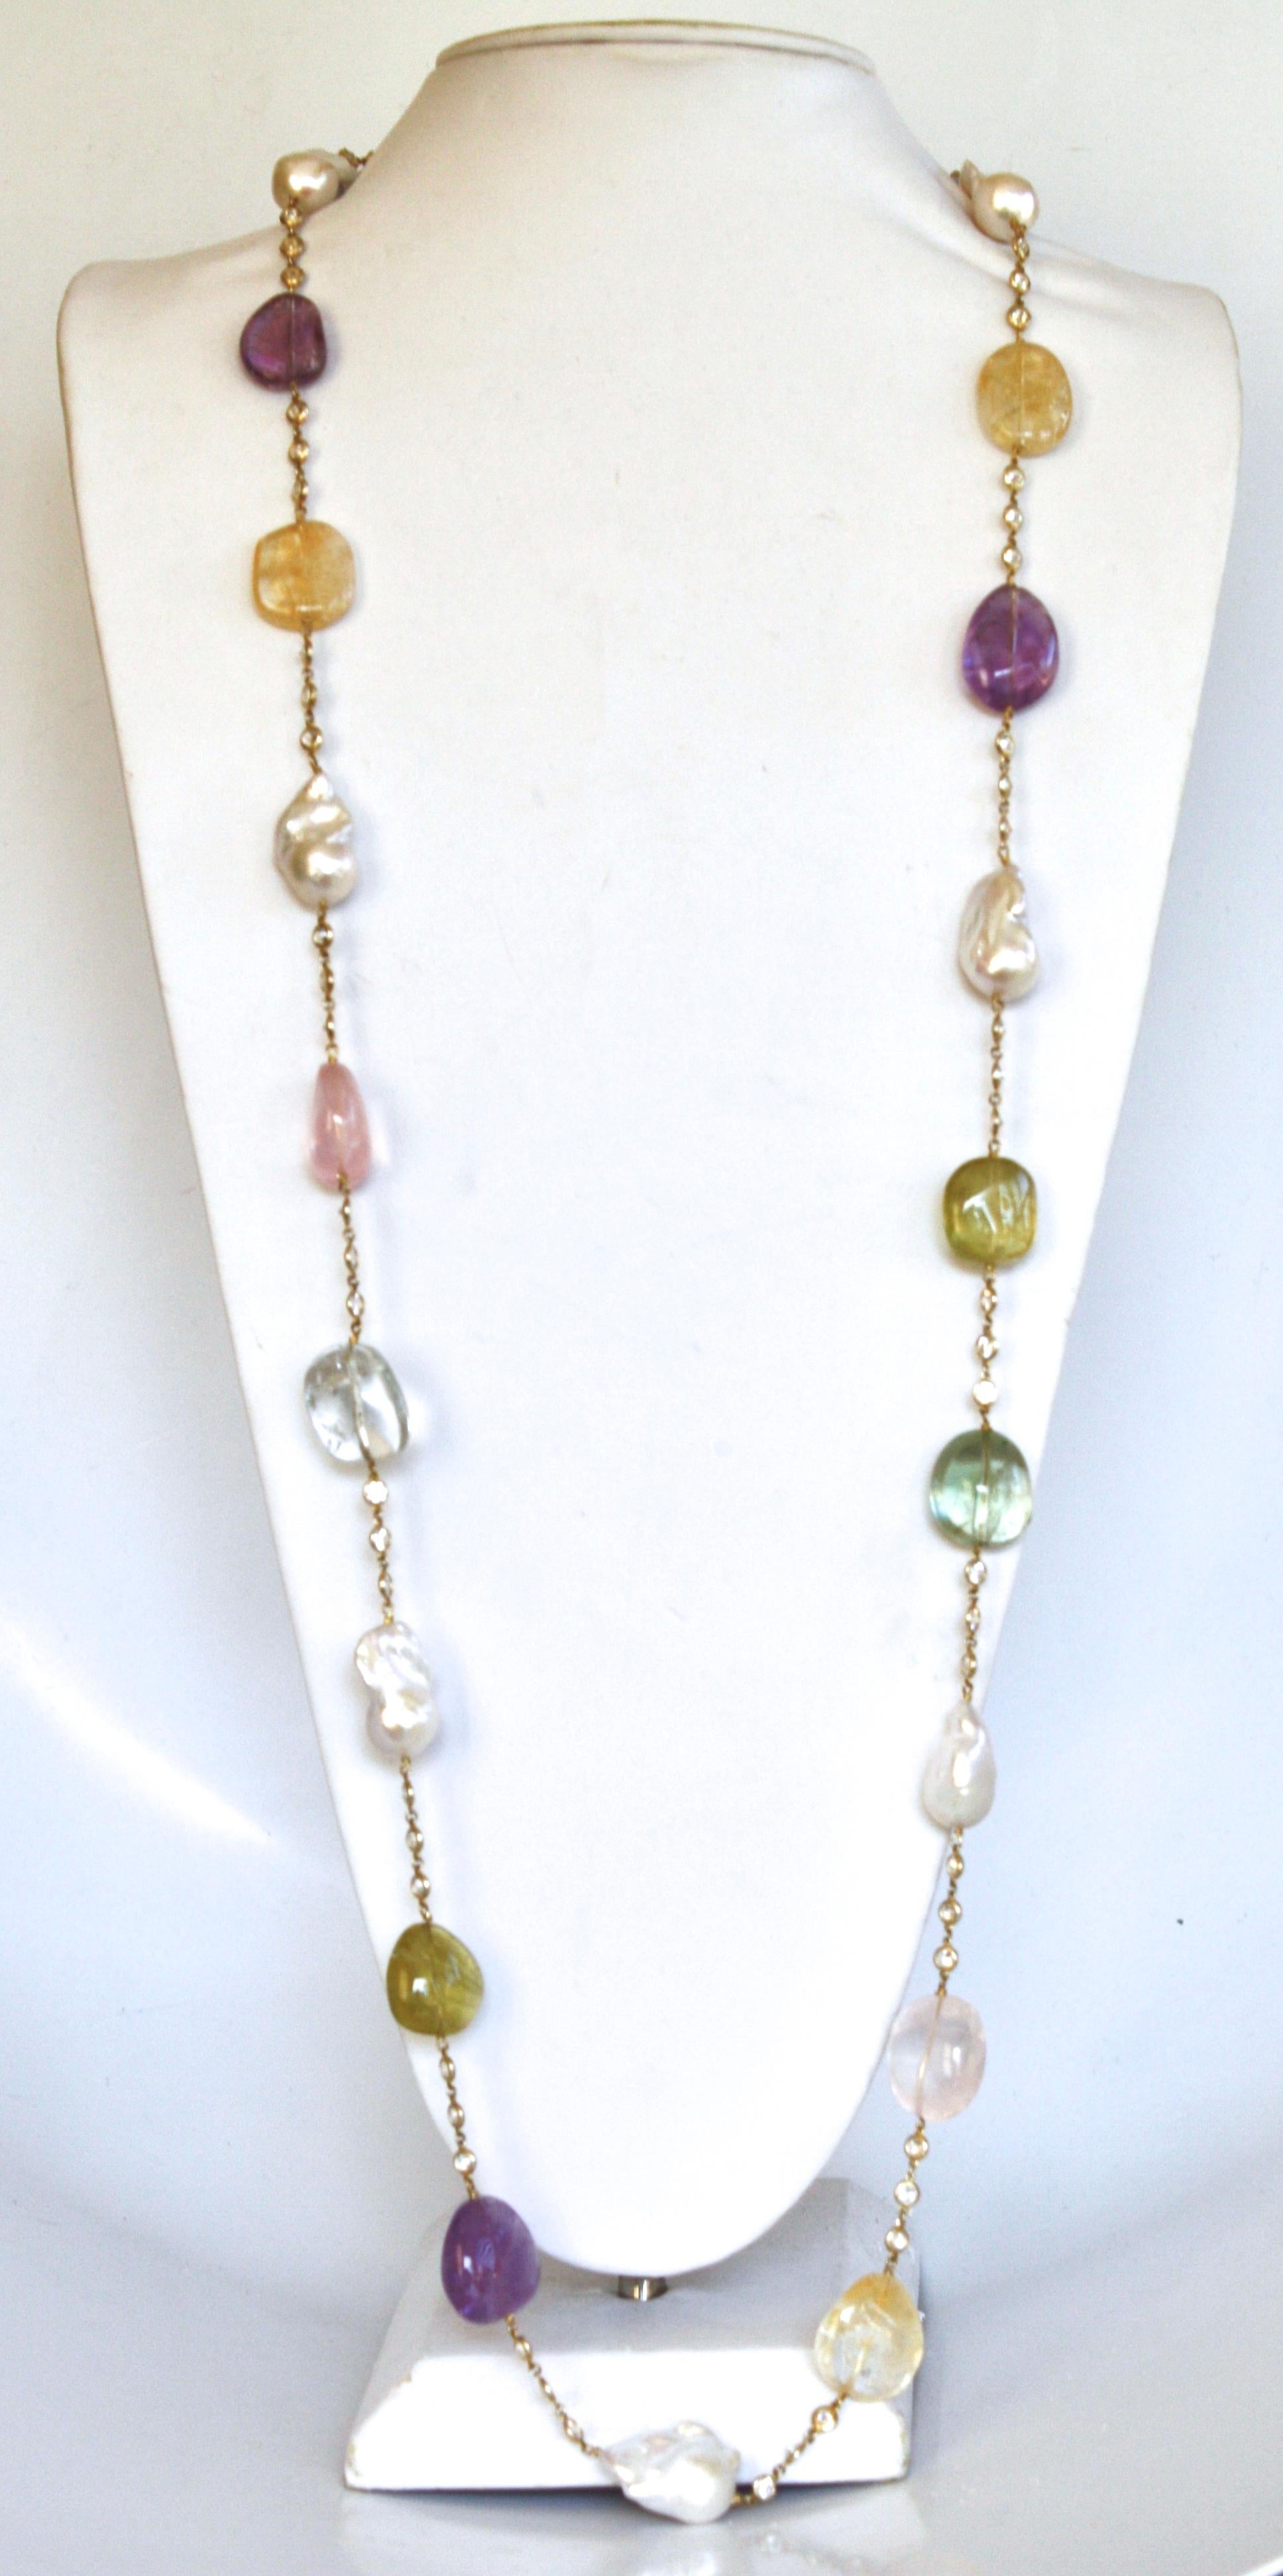 Bijoux Num Aquamarine, Amethyst, Lemon Quartz, Baroque Pearl, & Pink Quartz Necklace with CZ's on gold plated chain. 